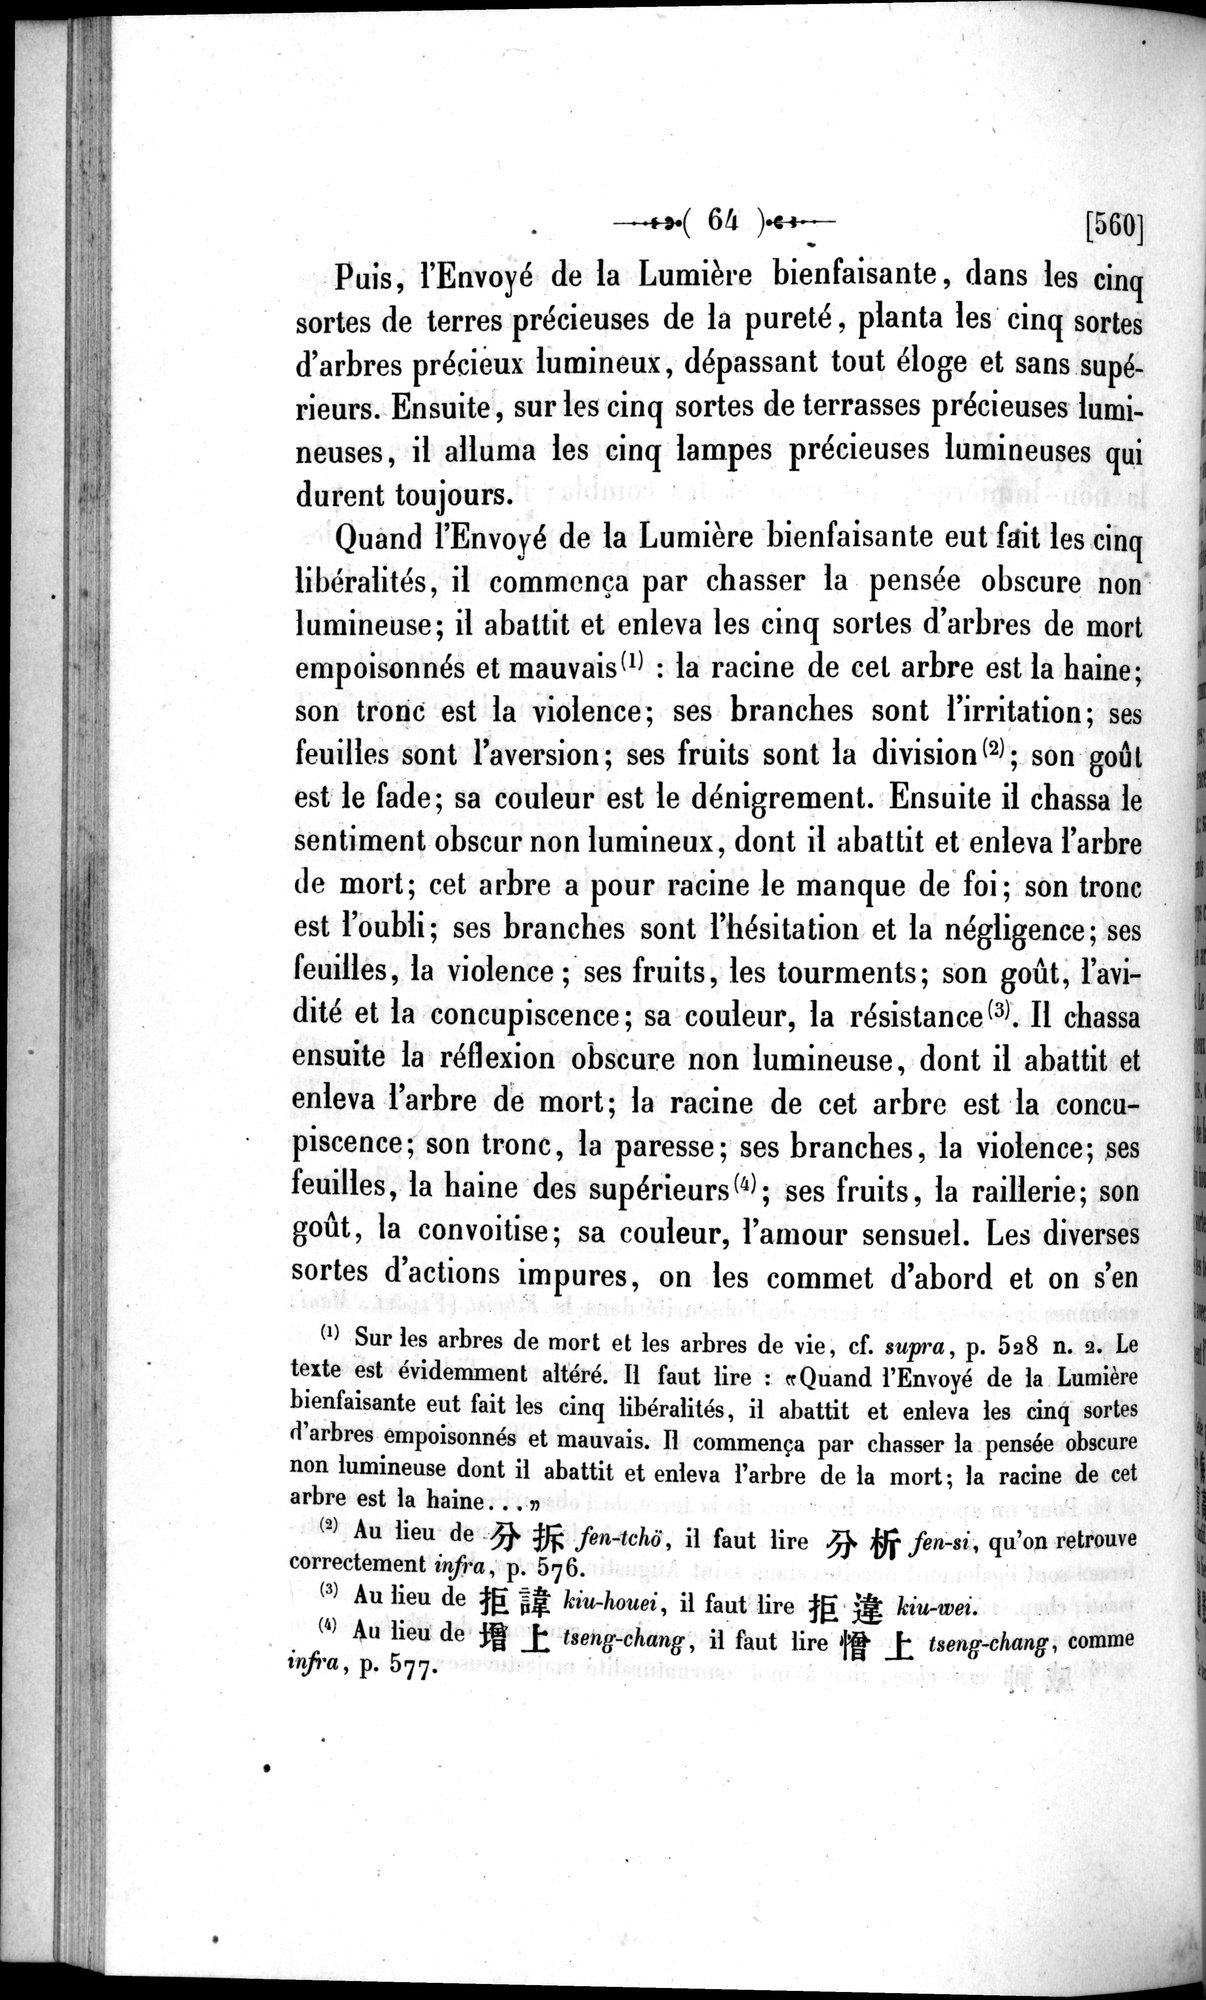 Un traité manichéen retrouvé en Chine : vol.1 / Page 74 (Grayscale High Resolution Image)